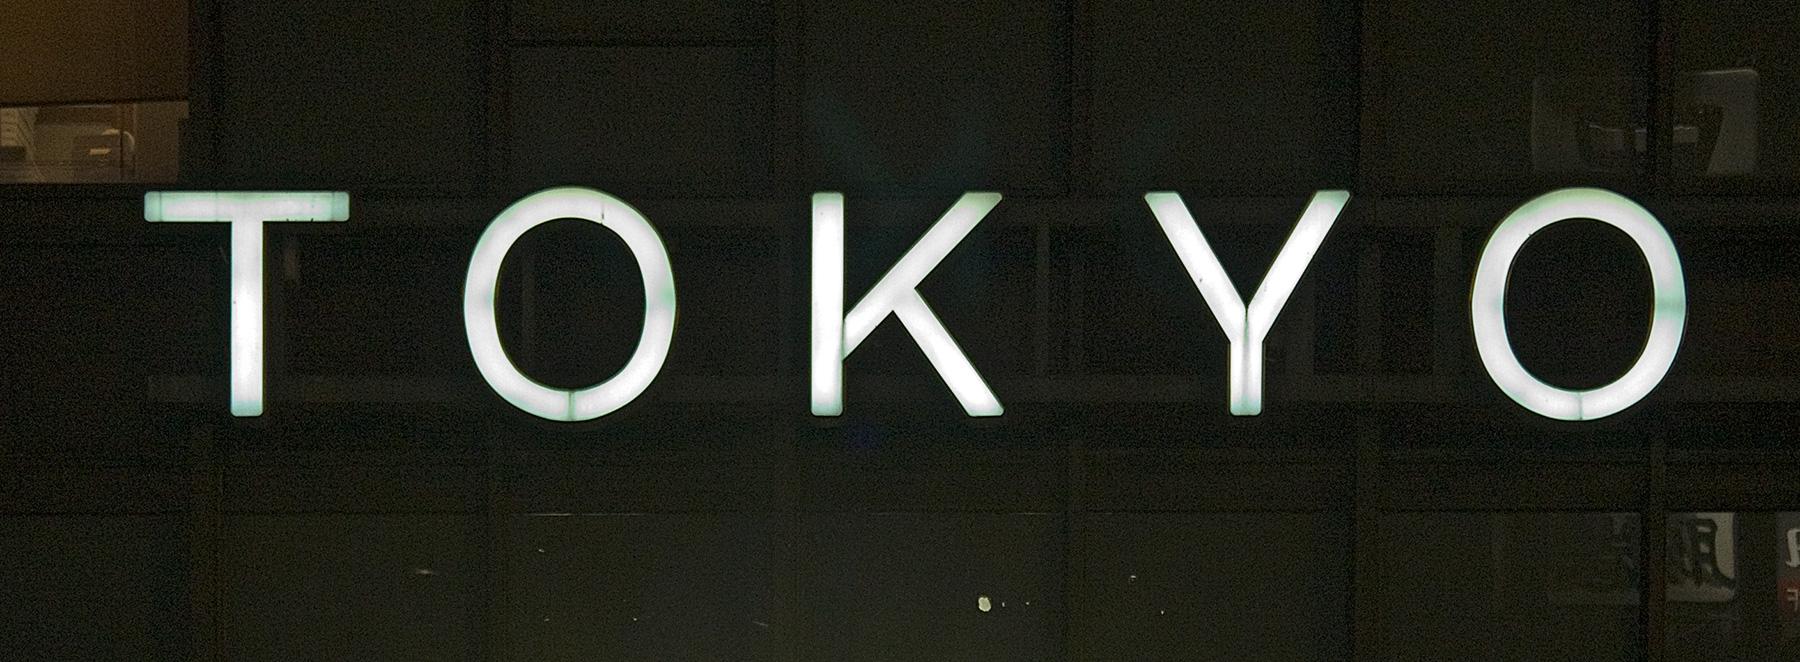 Tokyo Schild am Abend in Tokyo